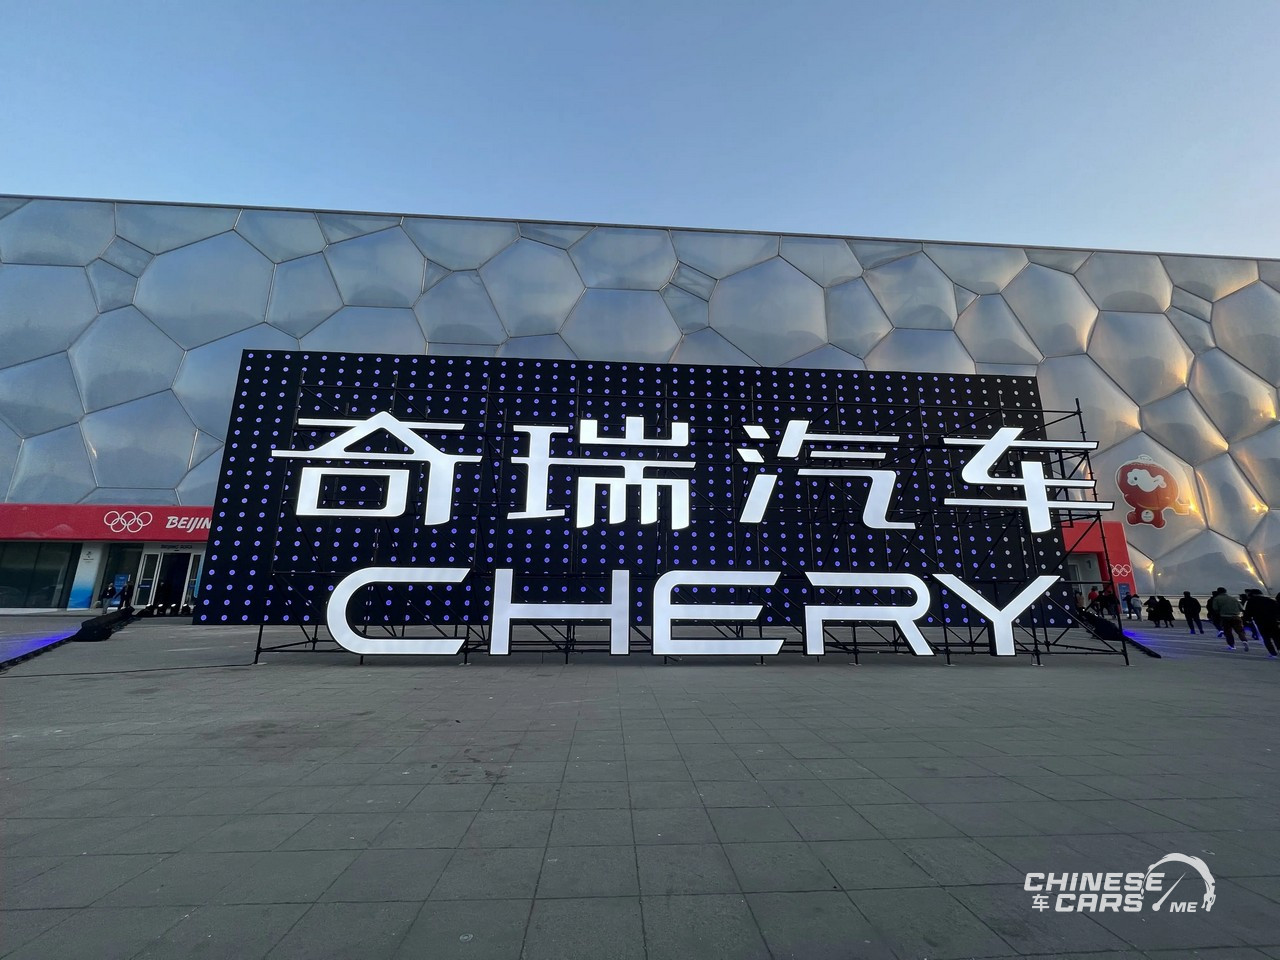 شبكة السيارات الصينية – شيري تُعلن عن استراتيجيتها الجديدة الشاملة لسيارات الطاقة الجديدة